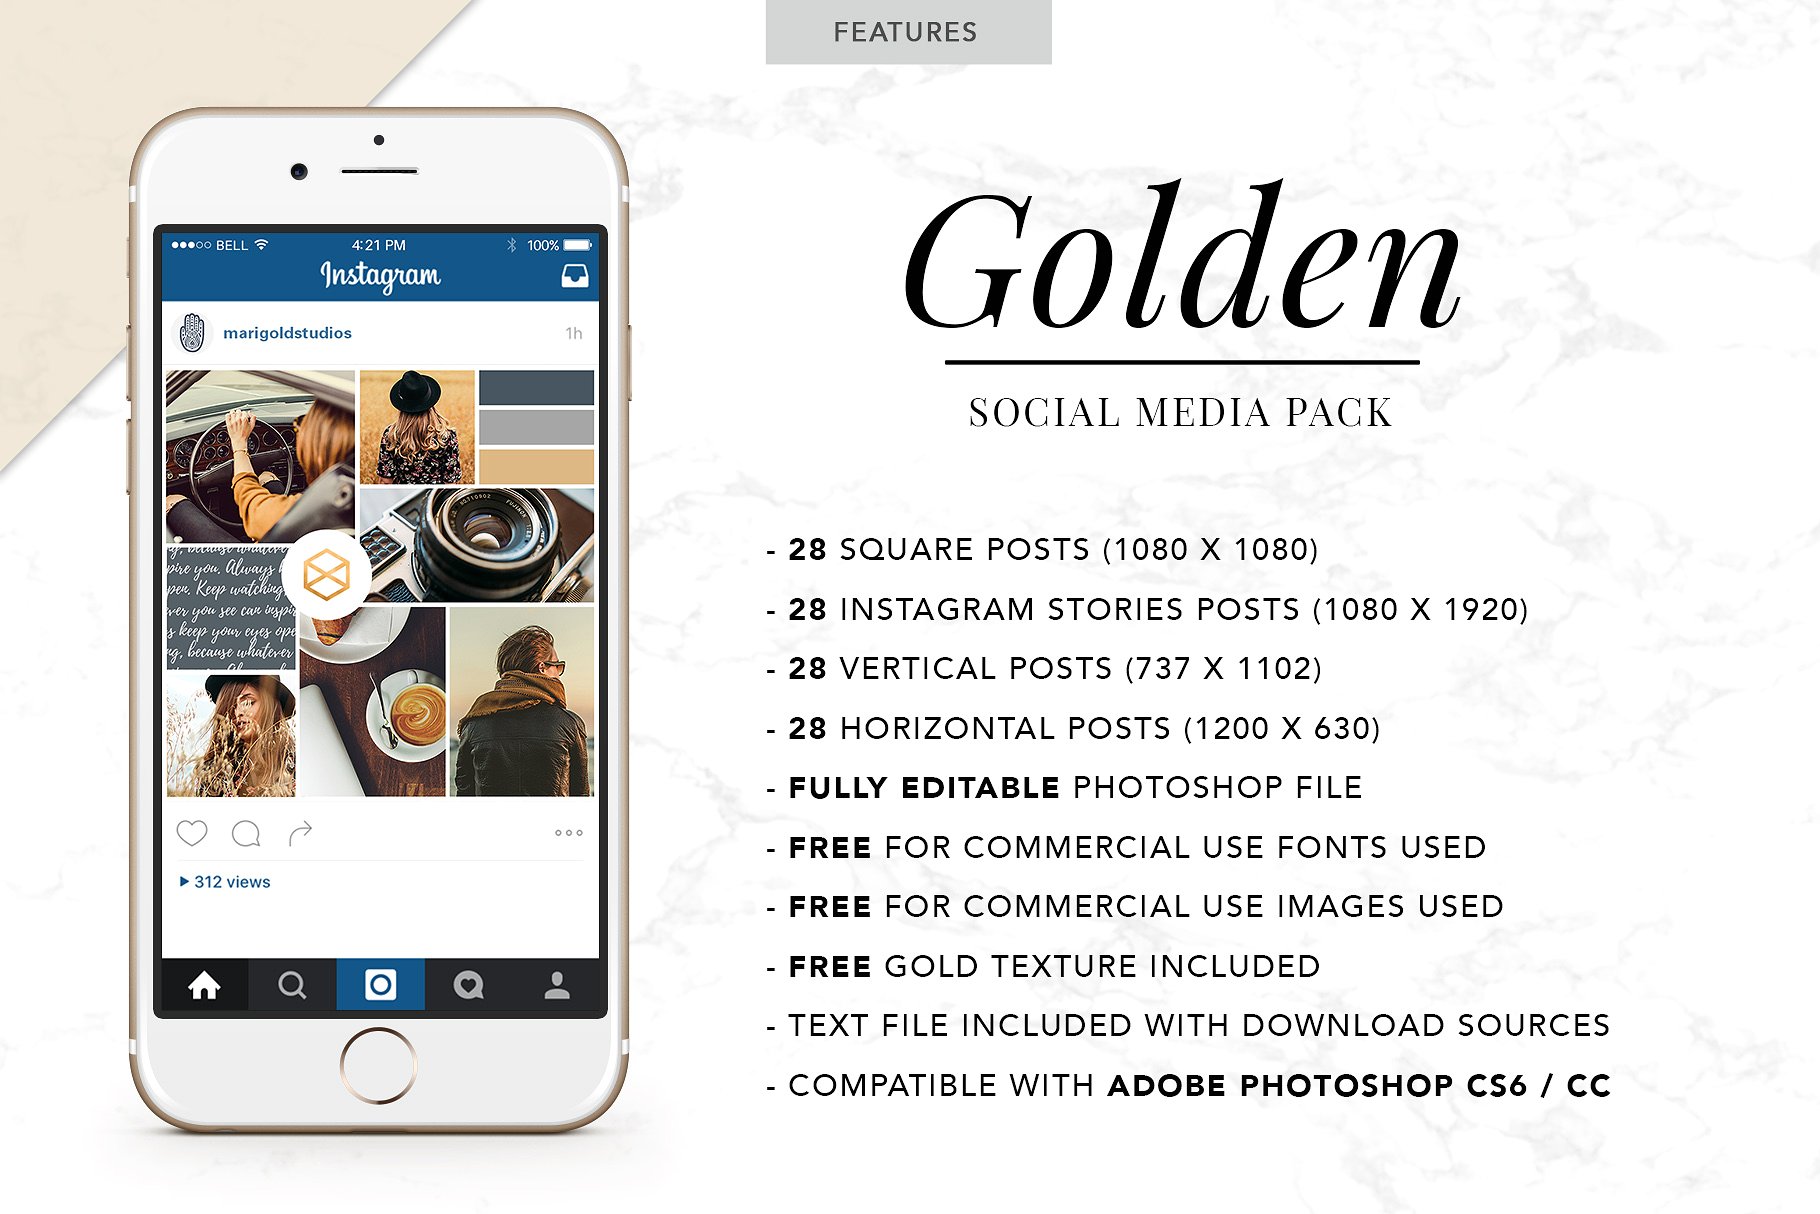 时尚生活主题社交媒体设计素材包 GOLDEN | Social Media Pack插图(1)